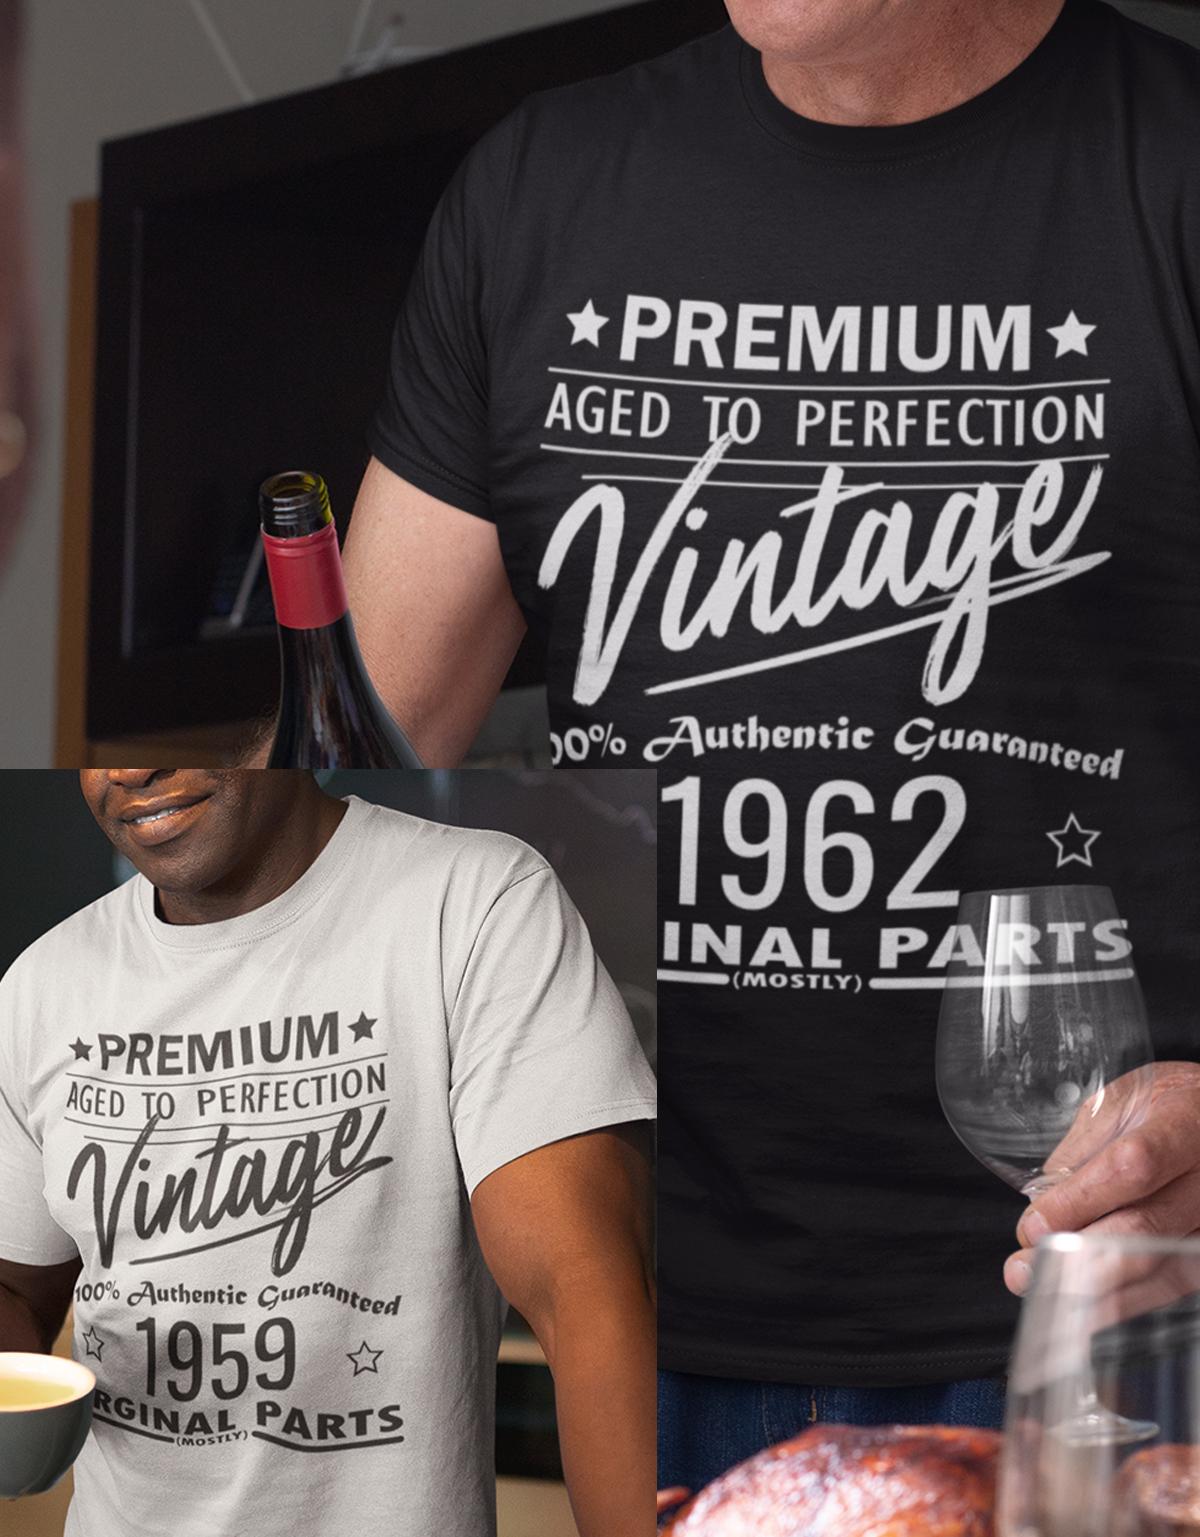 Geburtstag Tshirt für Männer Trage dein Geburtsjahr ein und mache daraus ein Unikat. Premium aged to perfection Vintage 100% Authentic Guaranteed Geburtsjahr Original Parts Mostly beispiel